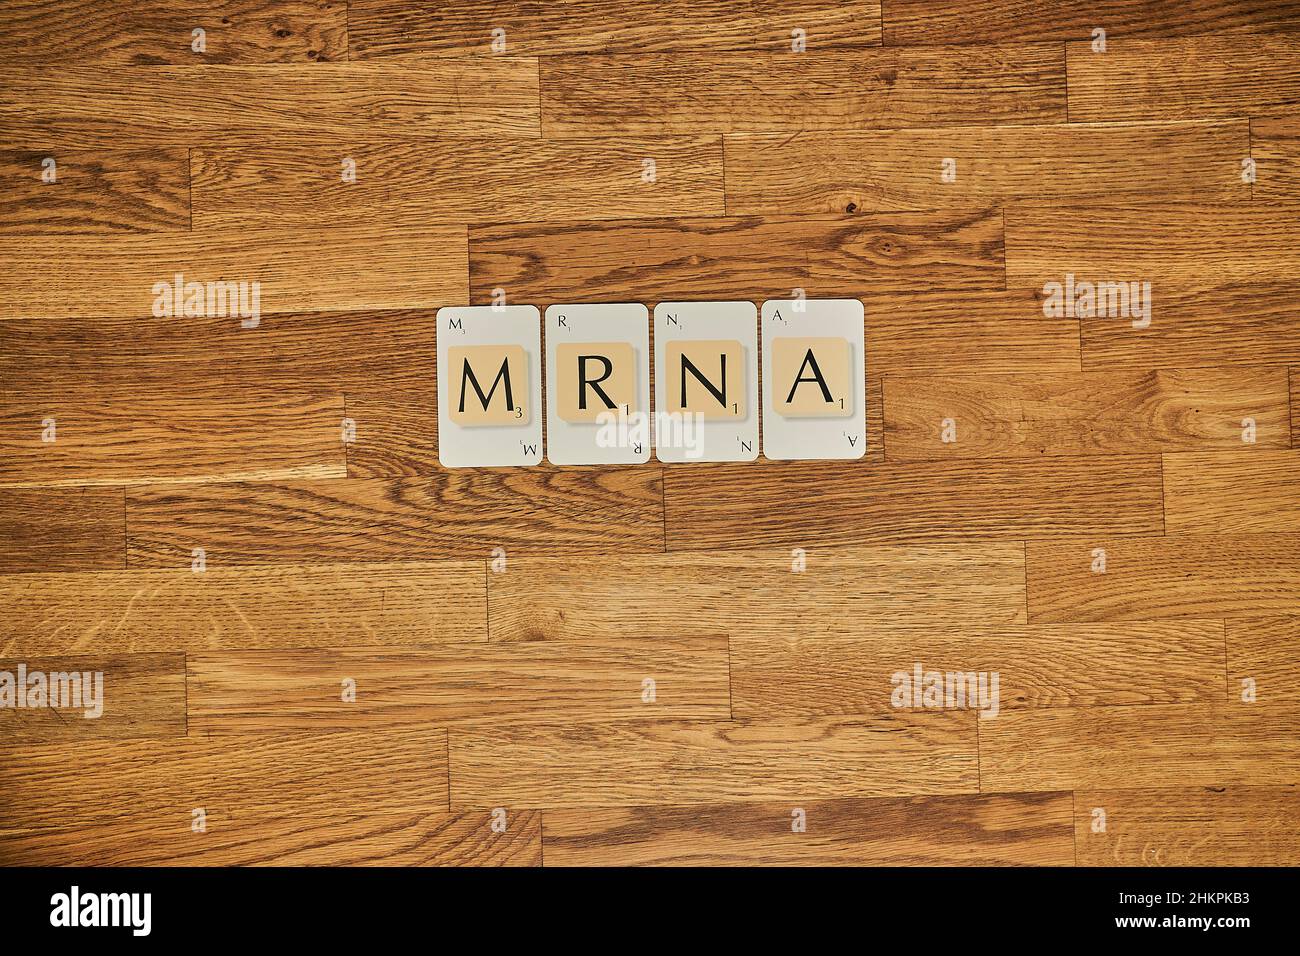 Cartas de Scrabble deletreando la corona covid 19 Palabra relacionada con la pandemia ARNM Foto de stock